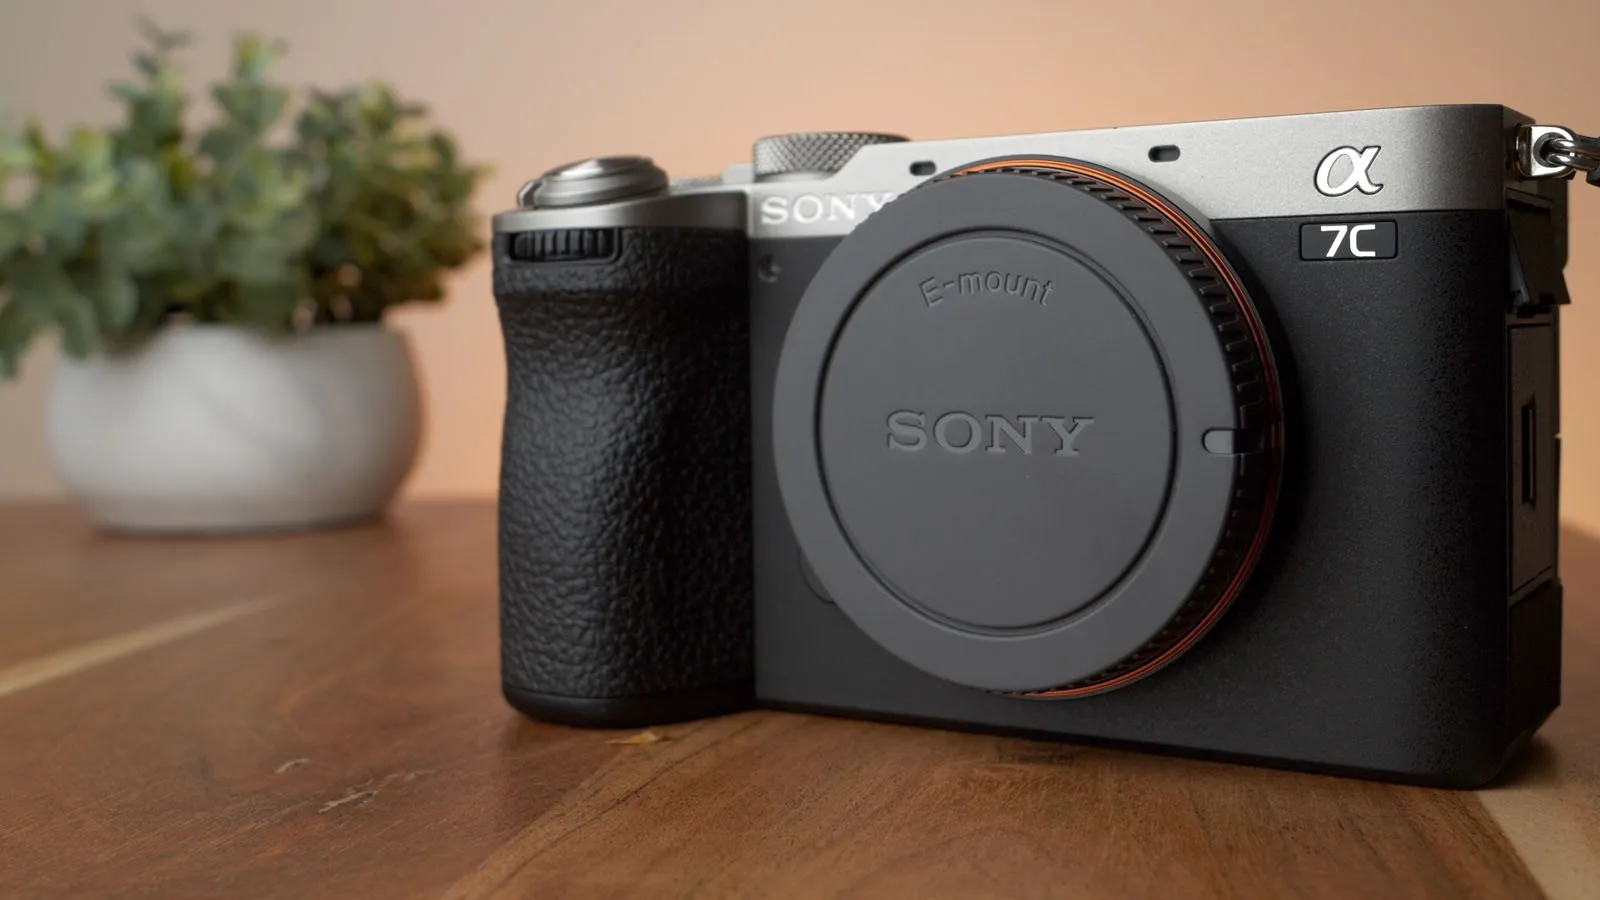 Sony ra mắt máy ảnh Sony a7C II và a7CR, bộ đôi máy ảnh nhỏ gọn, nhiều tính năng AI